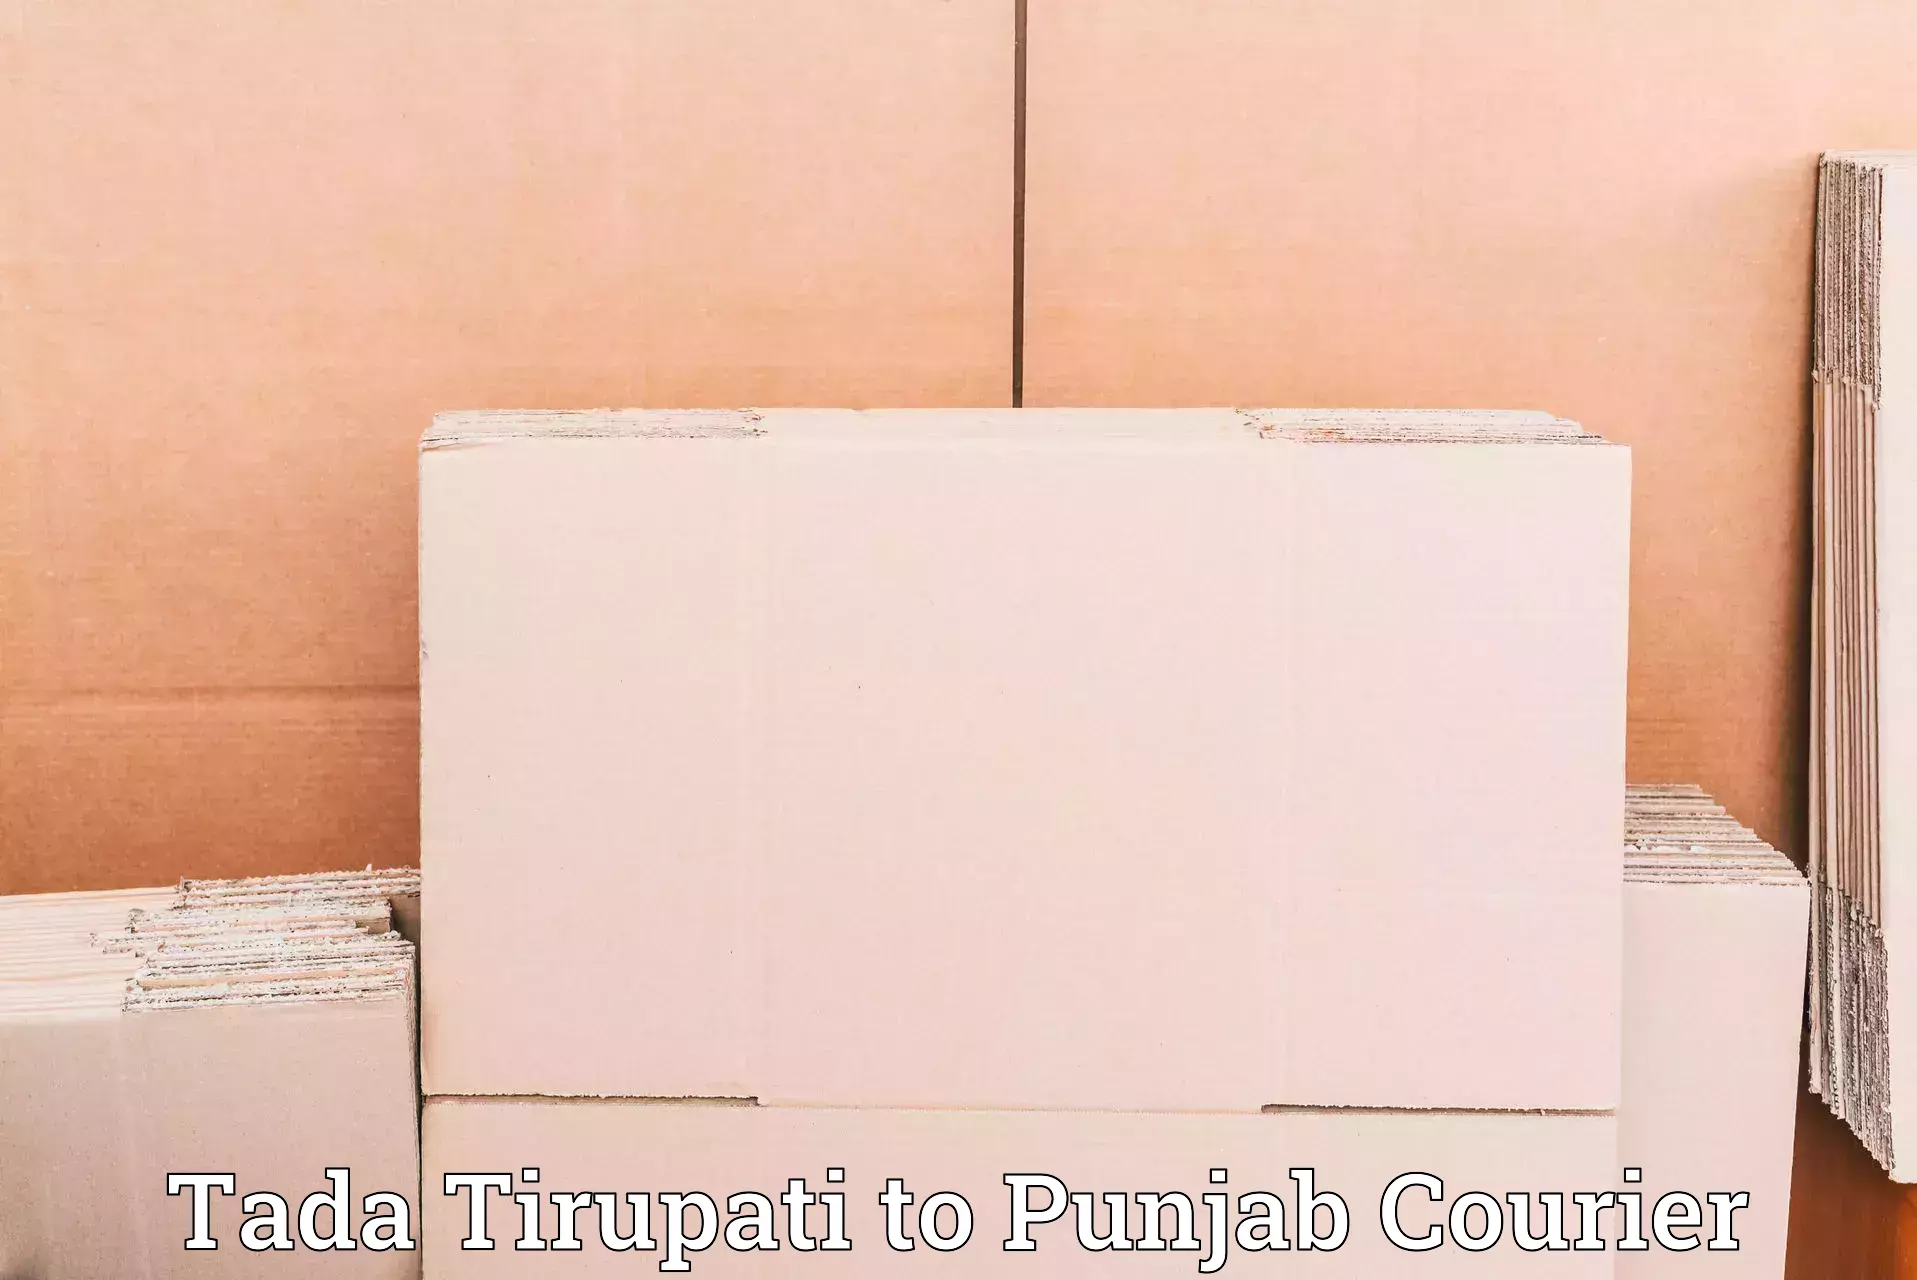 Quality courier partnerships Tada Tirupati to Adampur Jalandhar